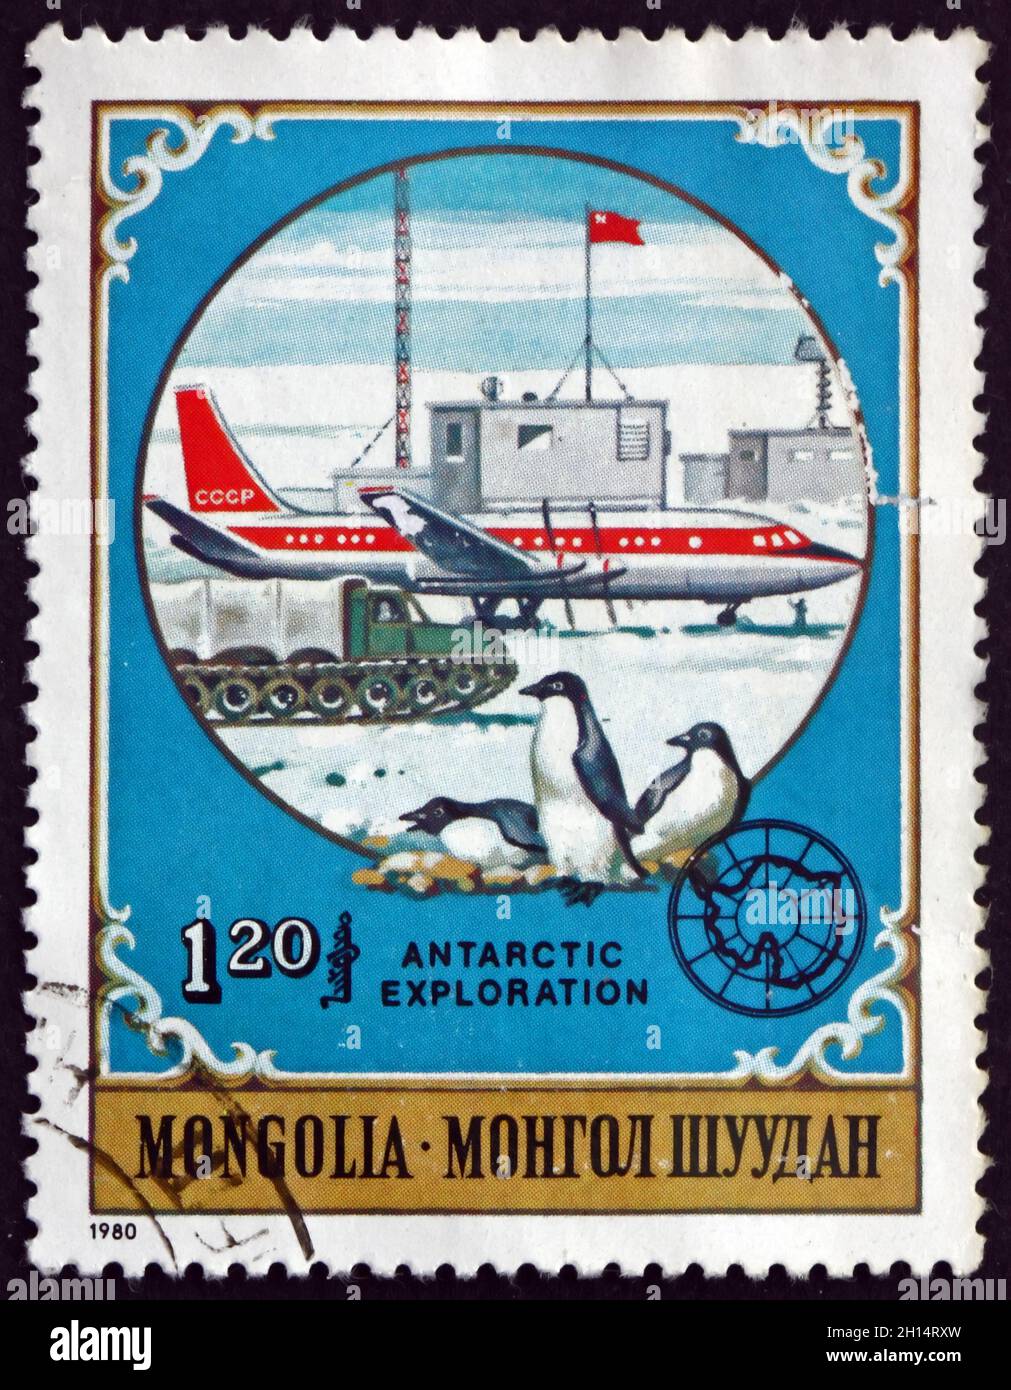 MONGOLIE - VERS 1980 : un timbre imprimé en Mongolie montre les pingouins et l'avion soviétique, les animaux antarctiques et l'exploration, vers 1980 Banque D'Images